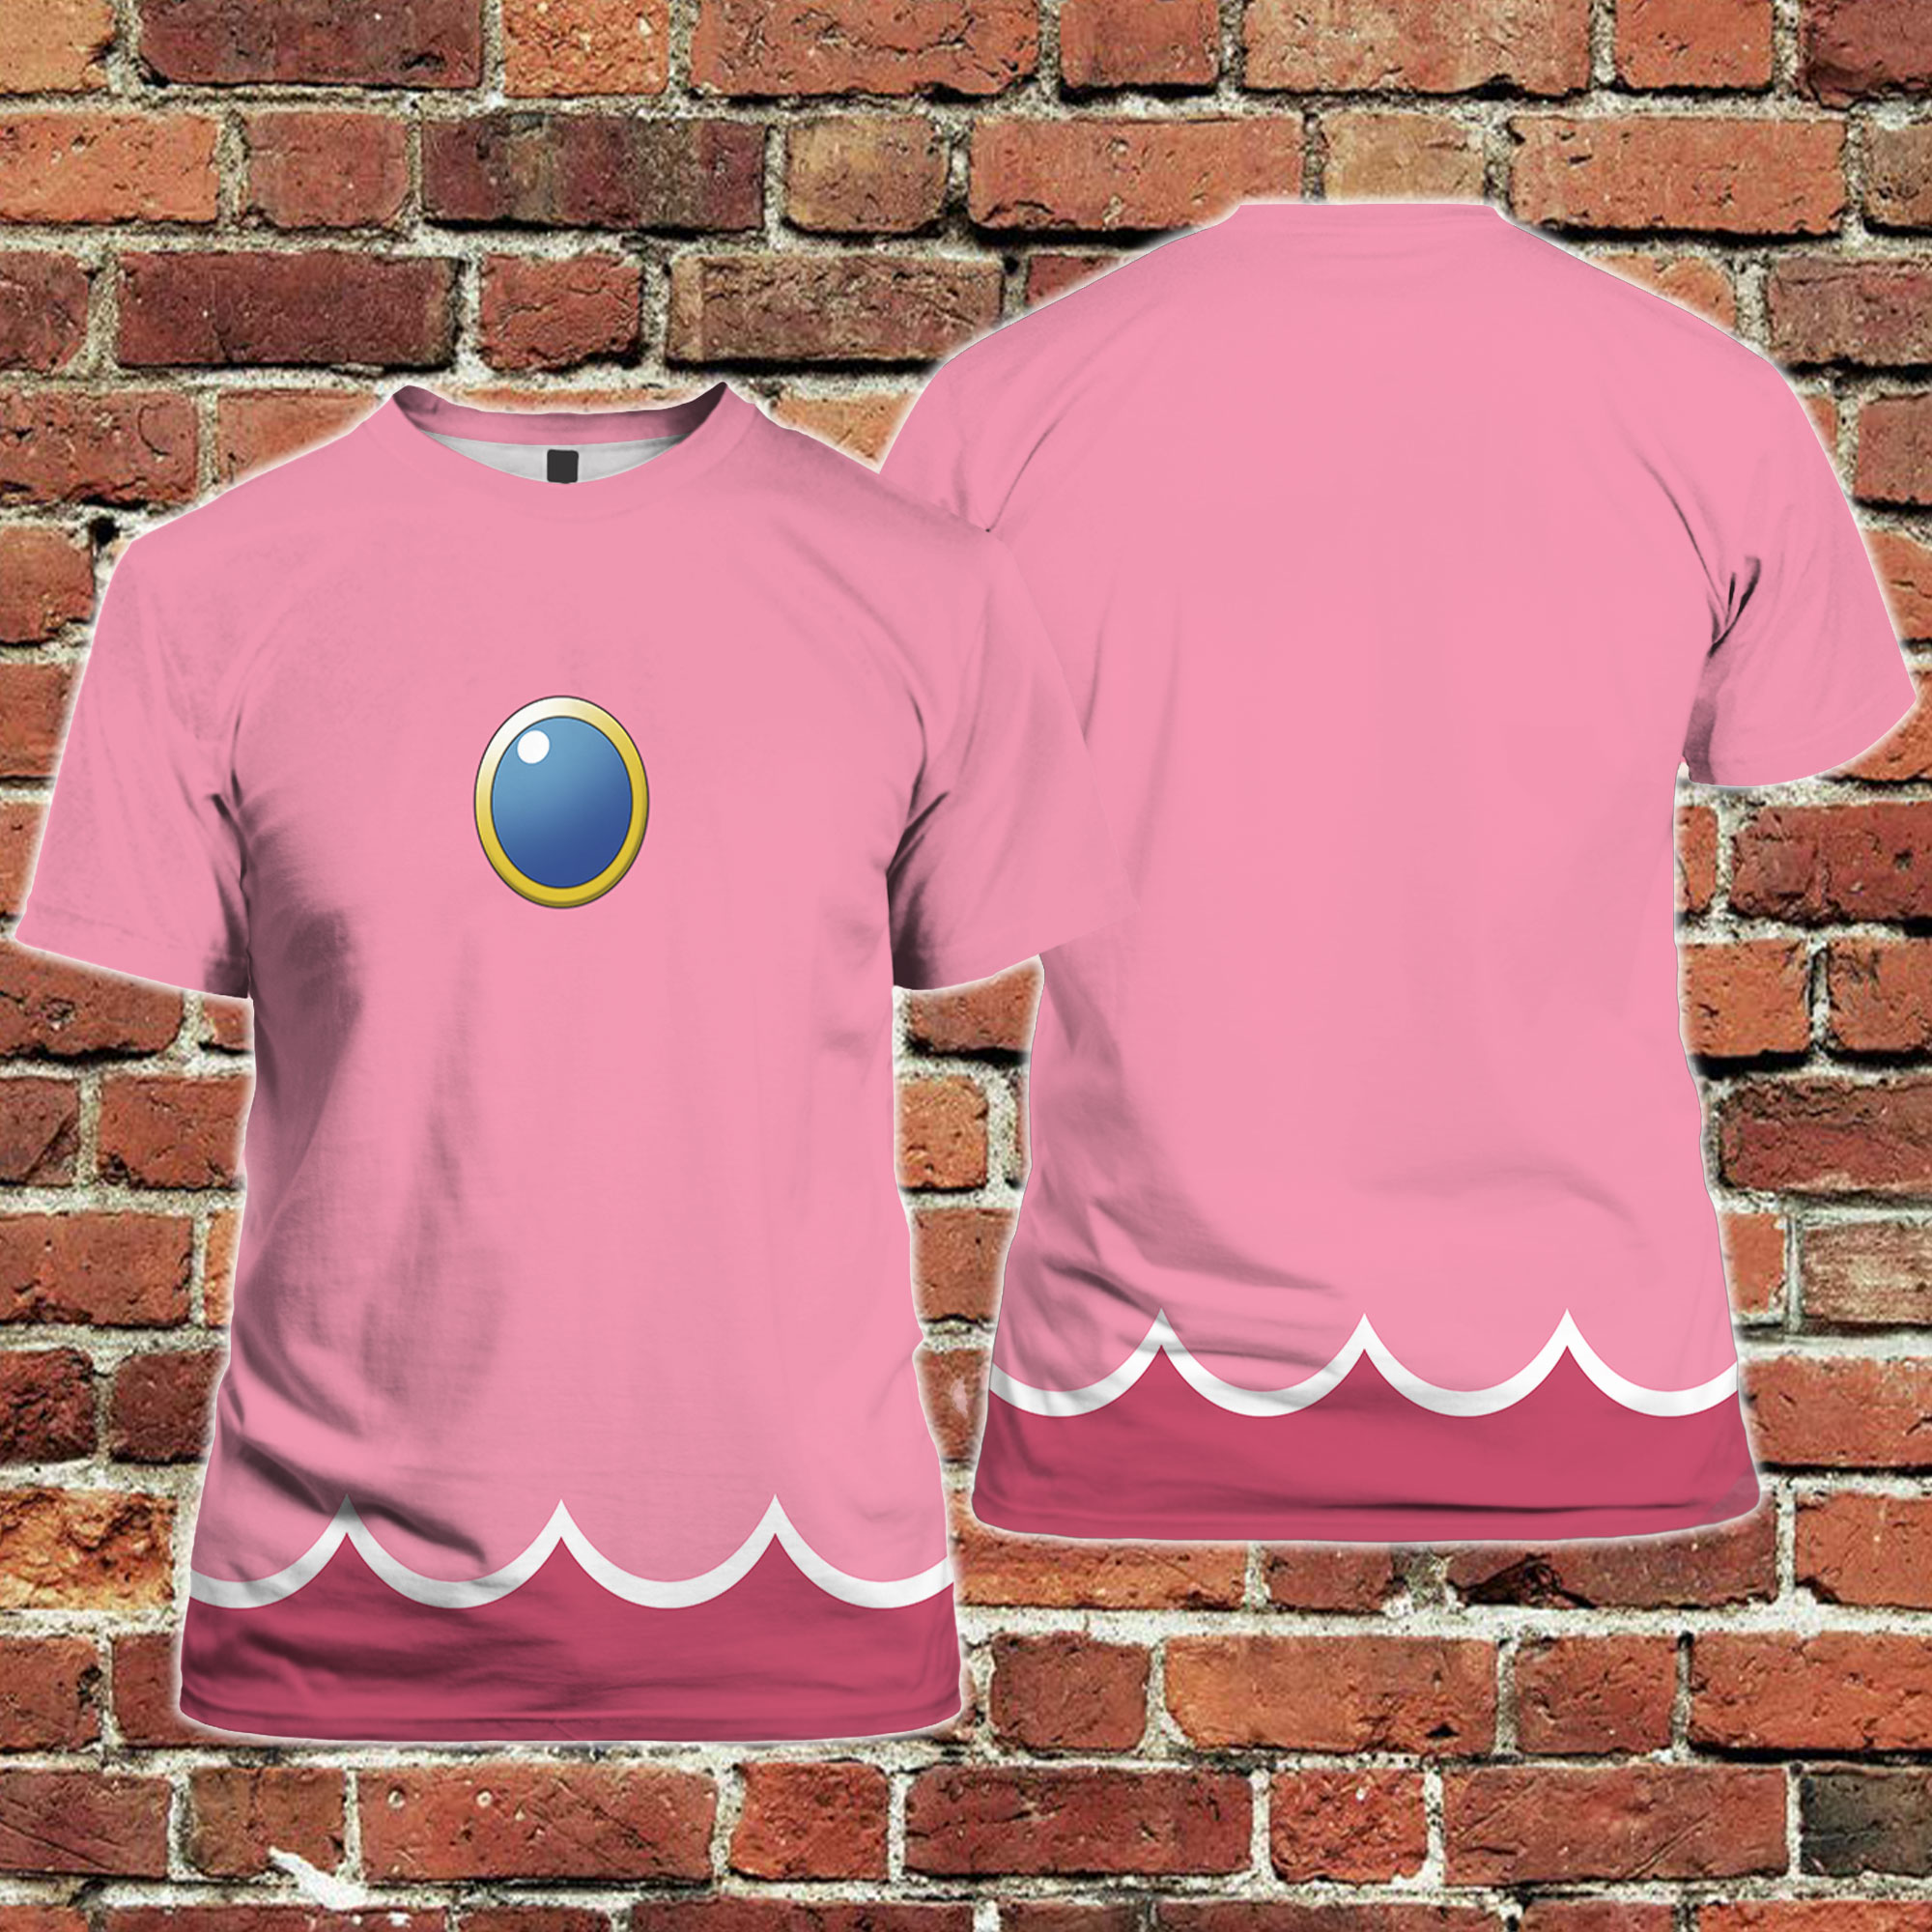 Peach's Gym - Princess Peach T-Shirt - The Shirt List